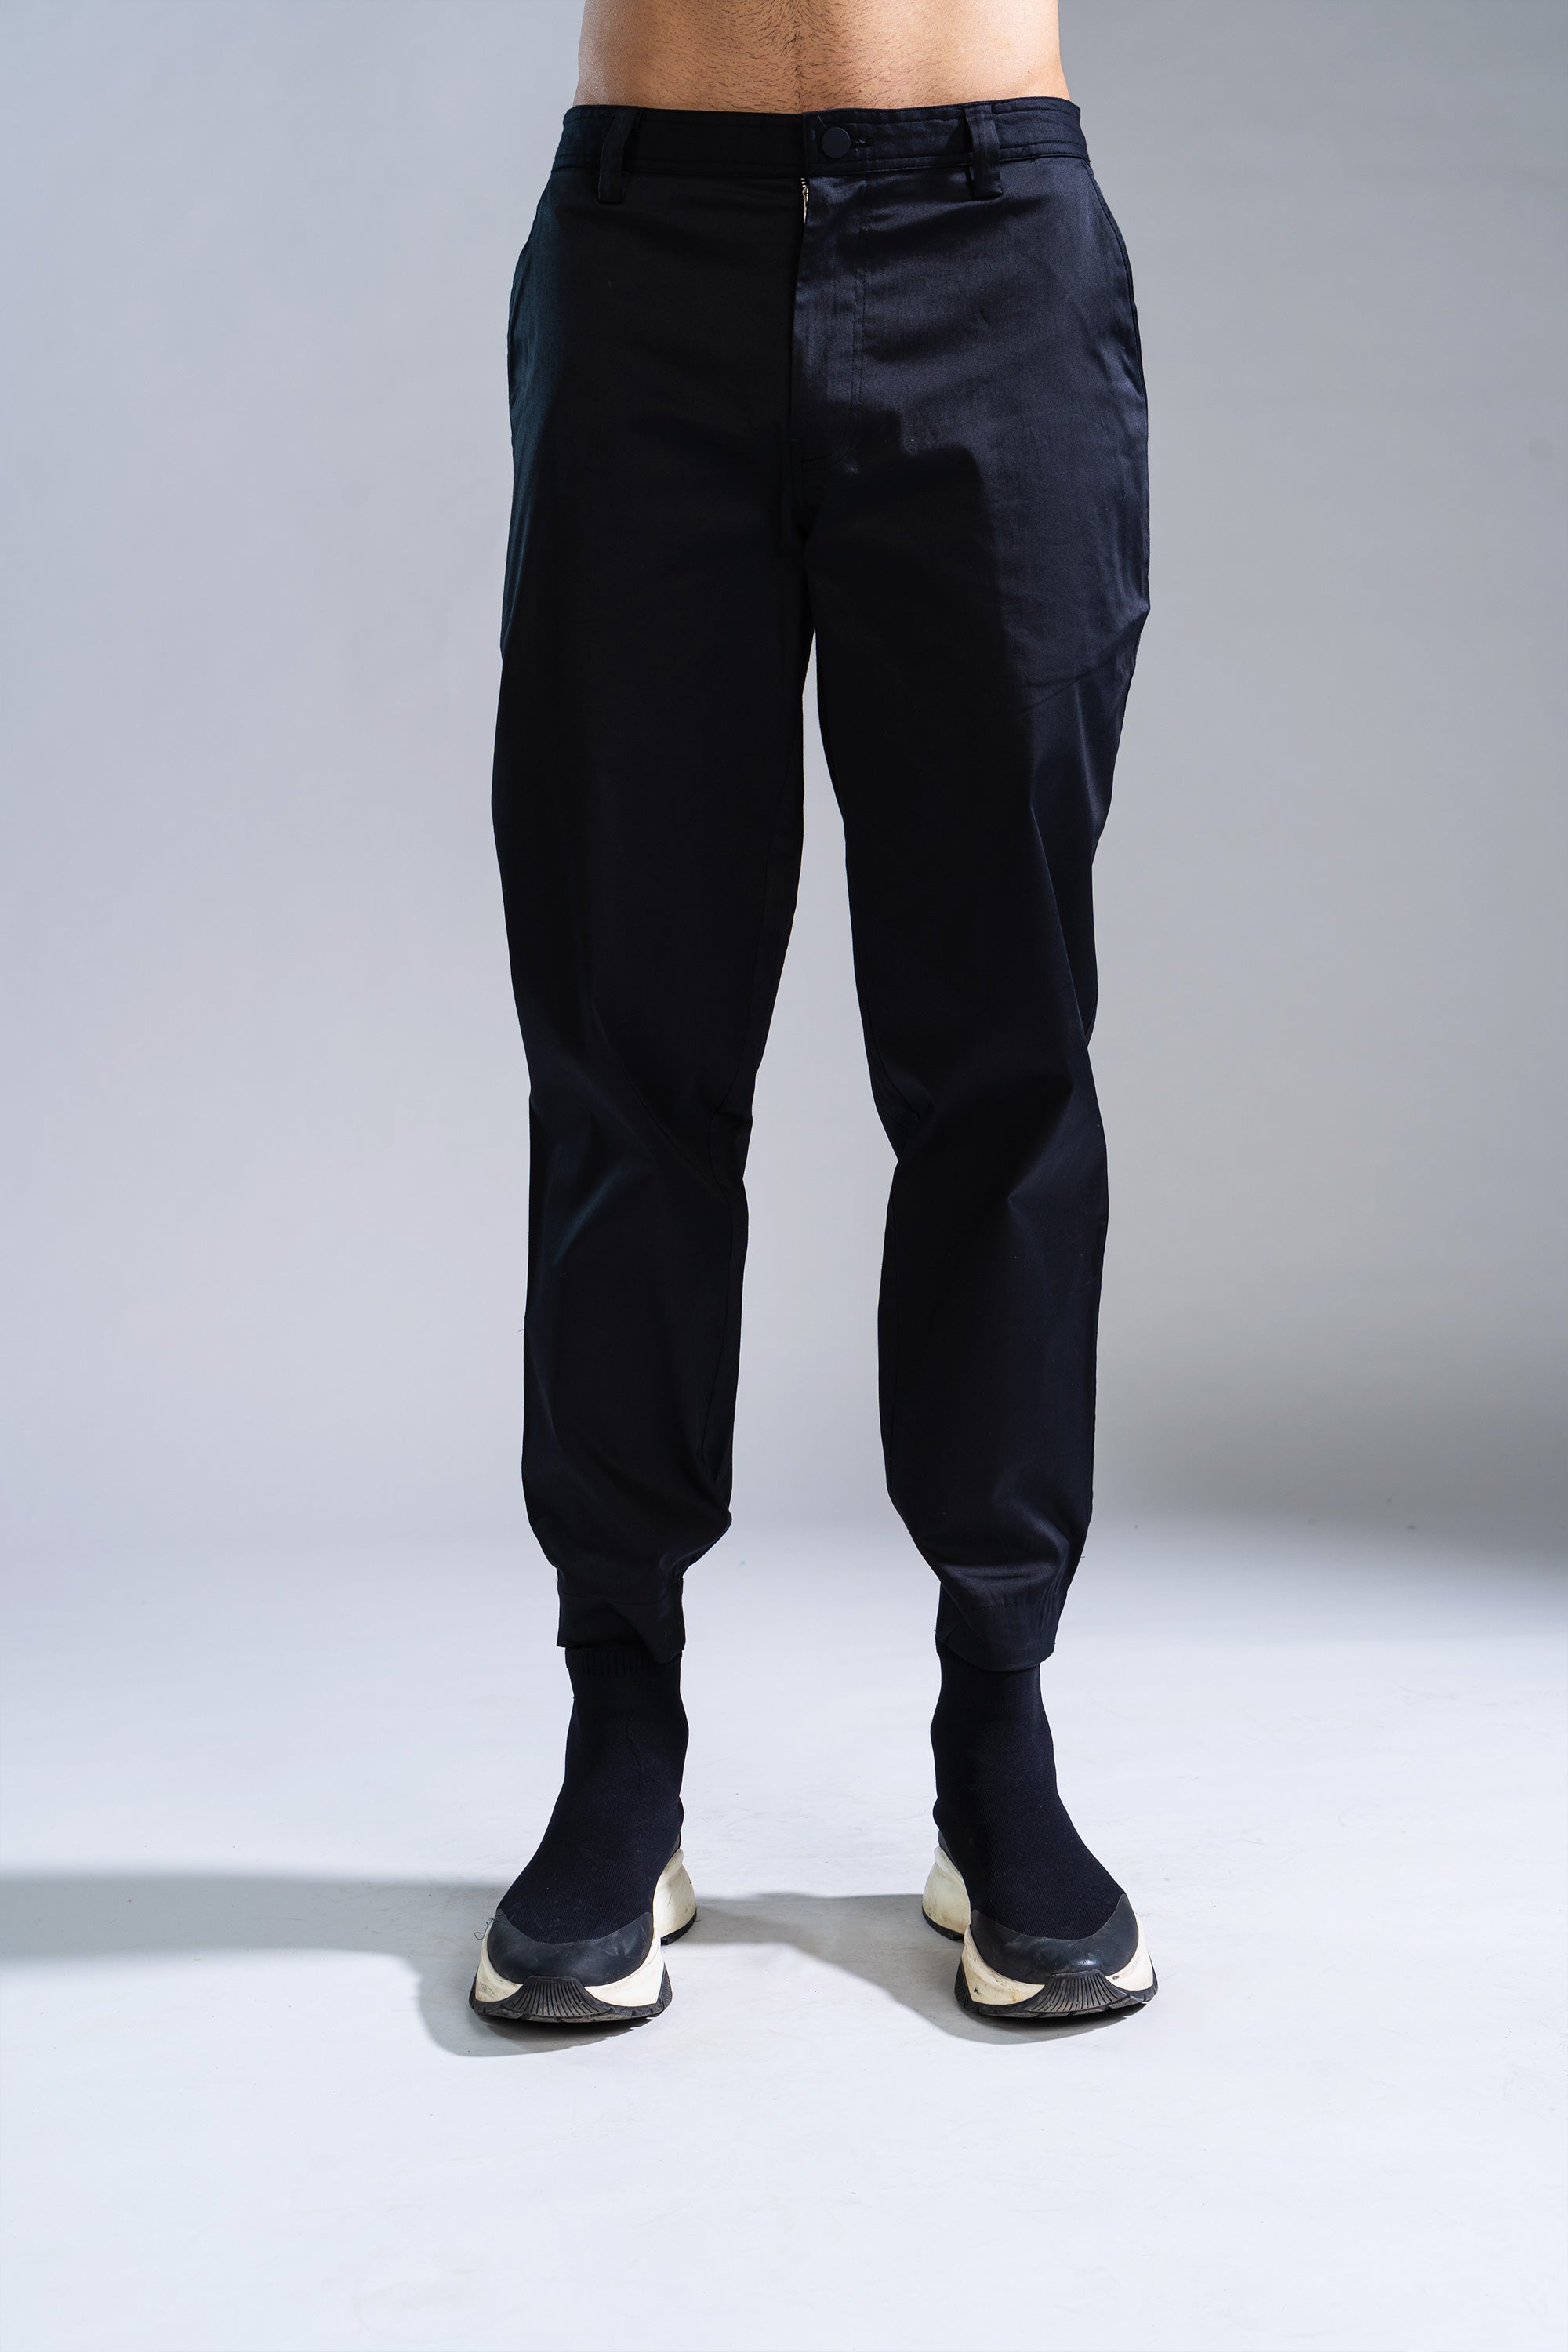 MANCREW Sky Blue, Black Formal Pant For Men - Formal Trouser combo